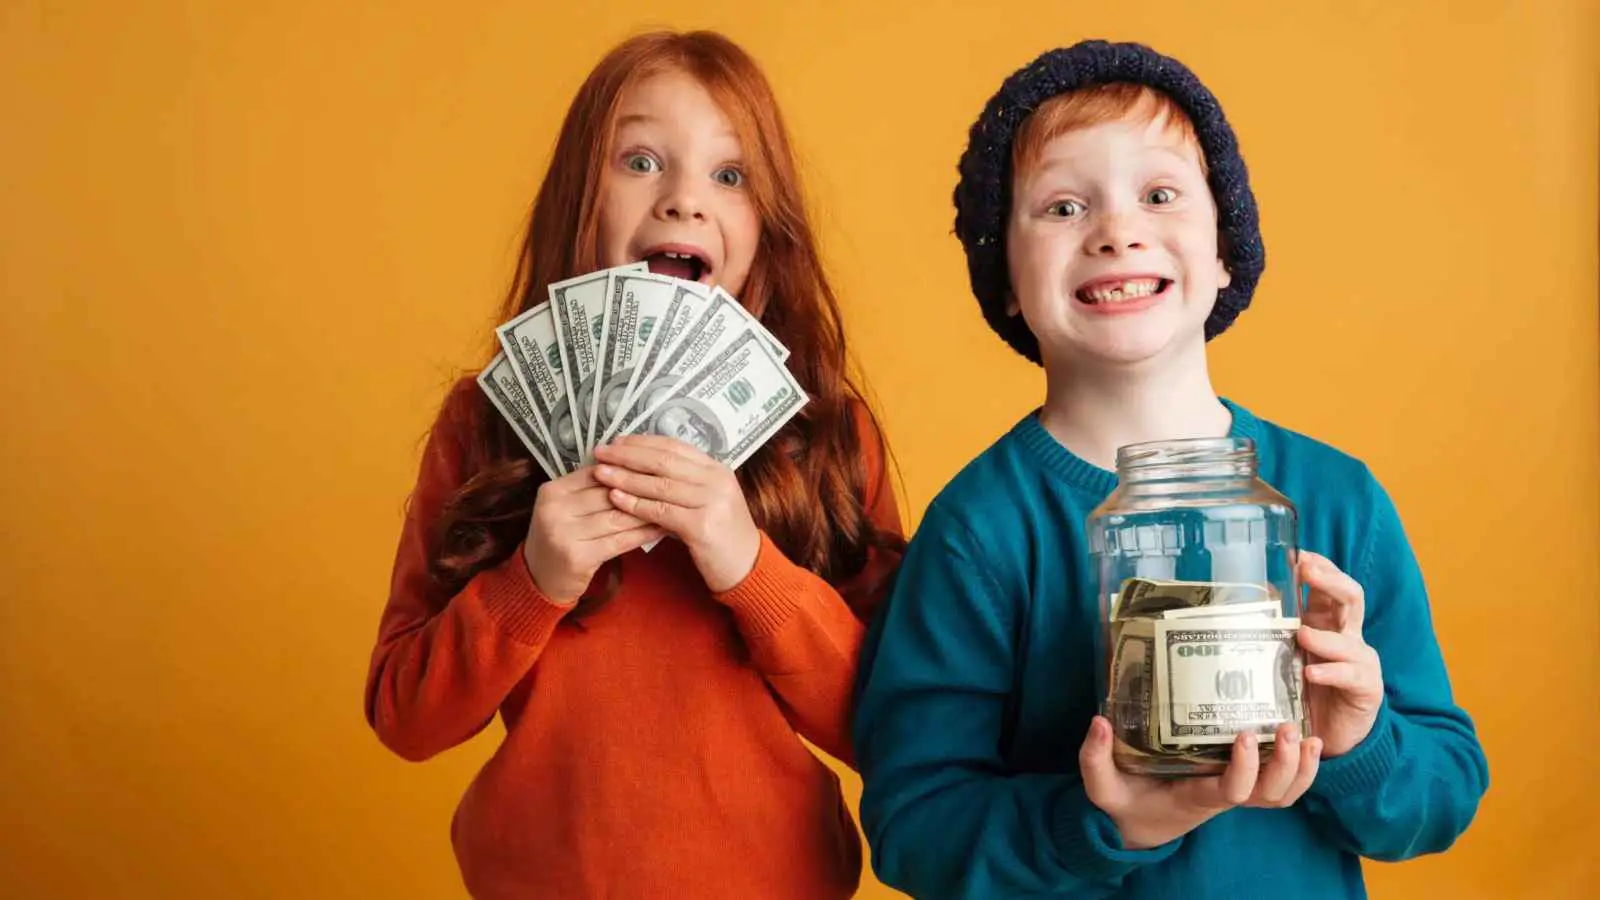 كيف تعلم طفلك أهمية النقود؟